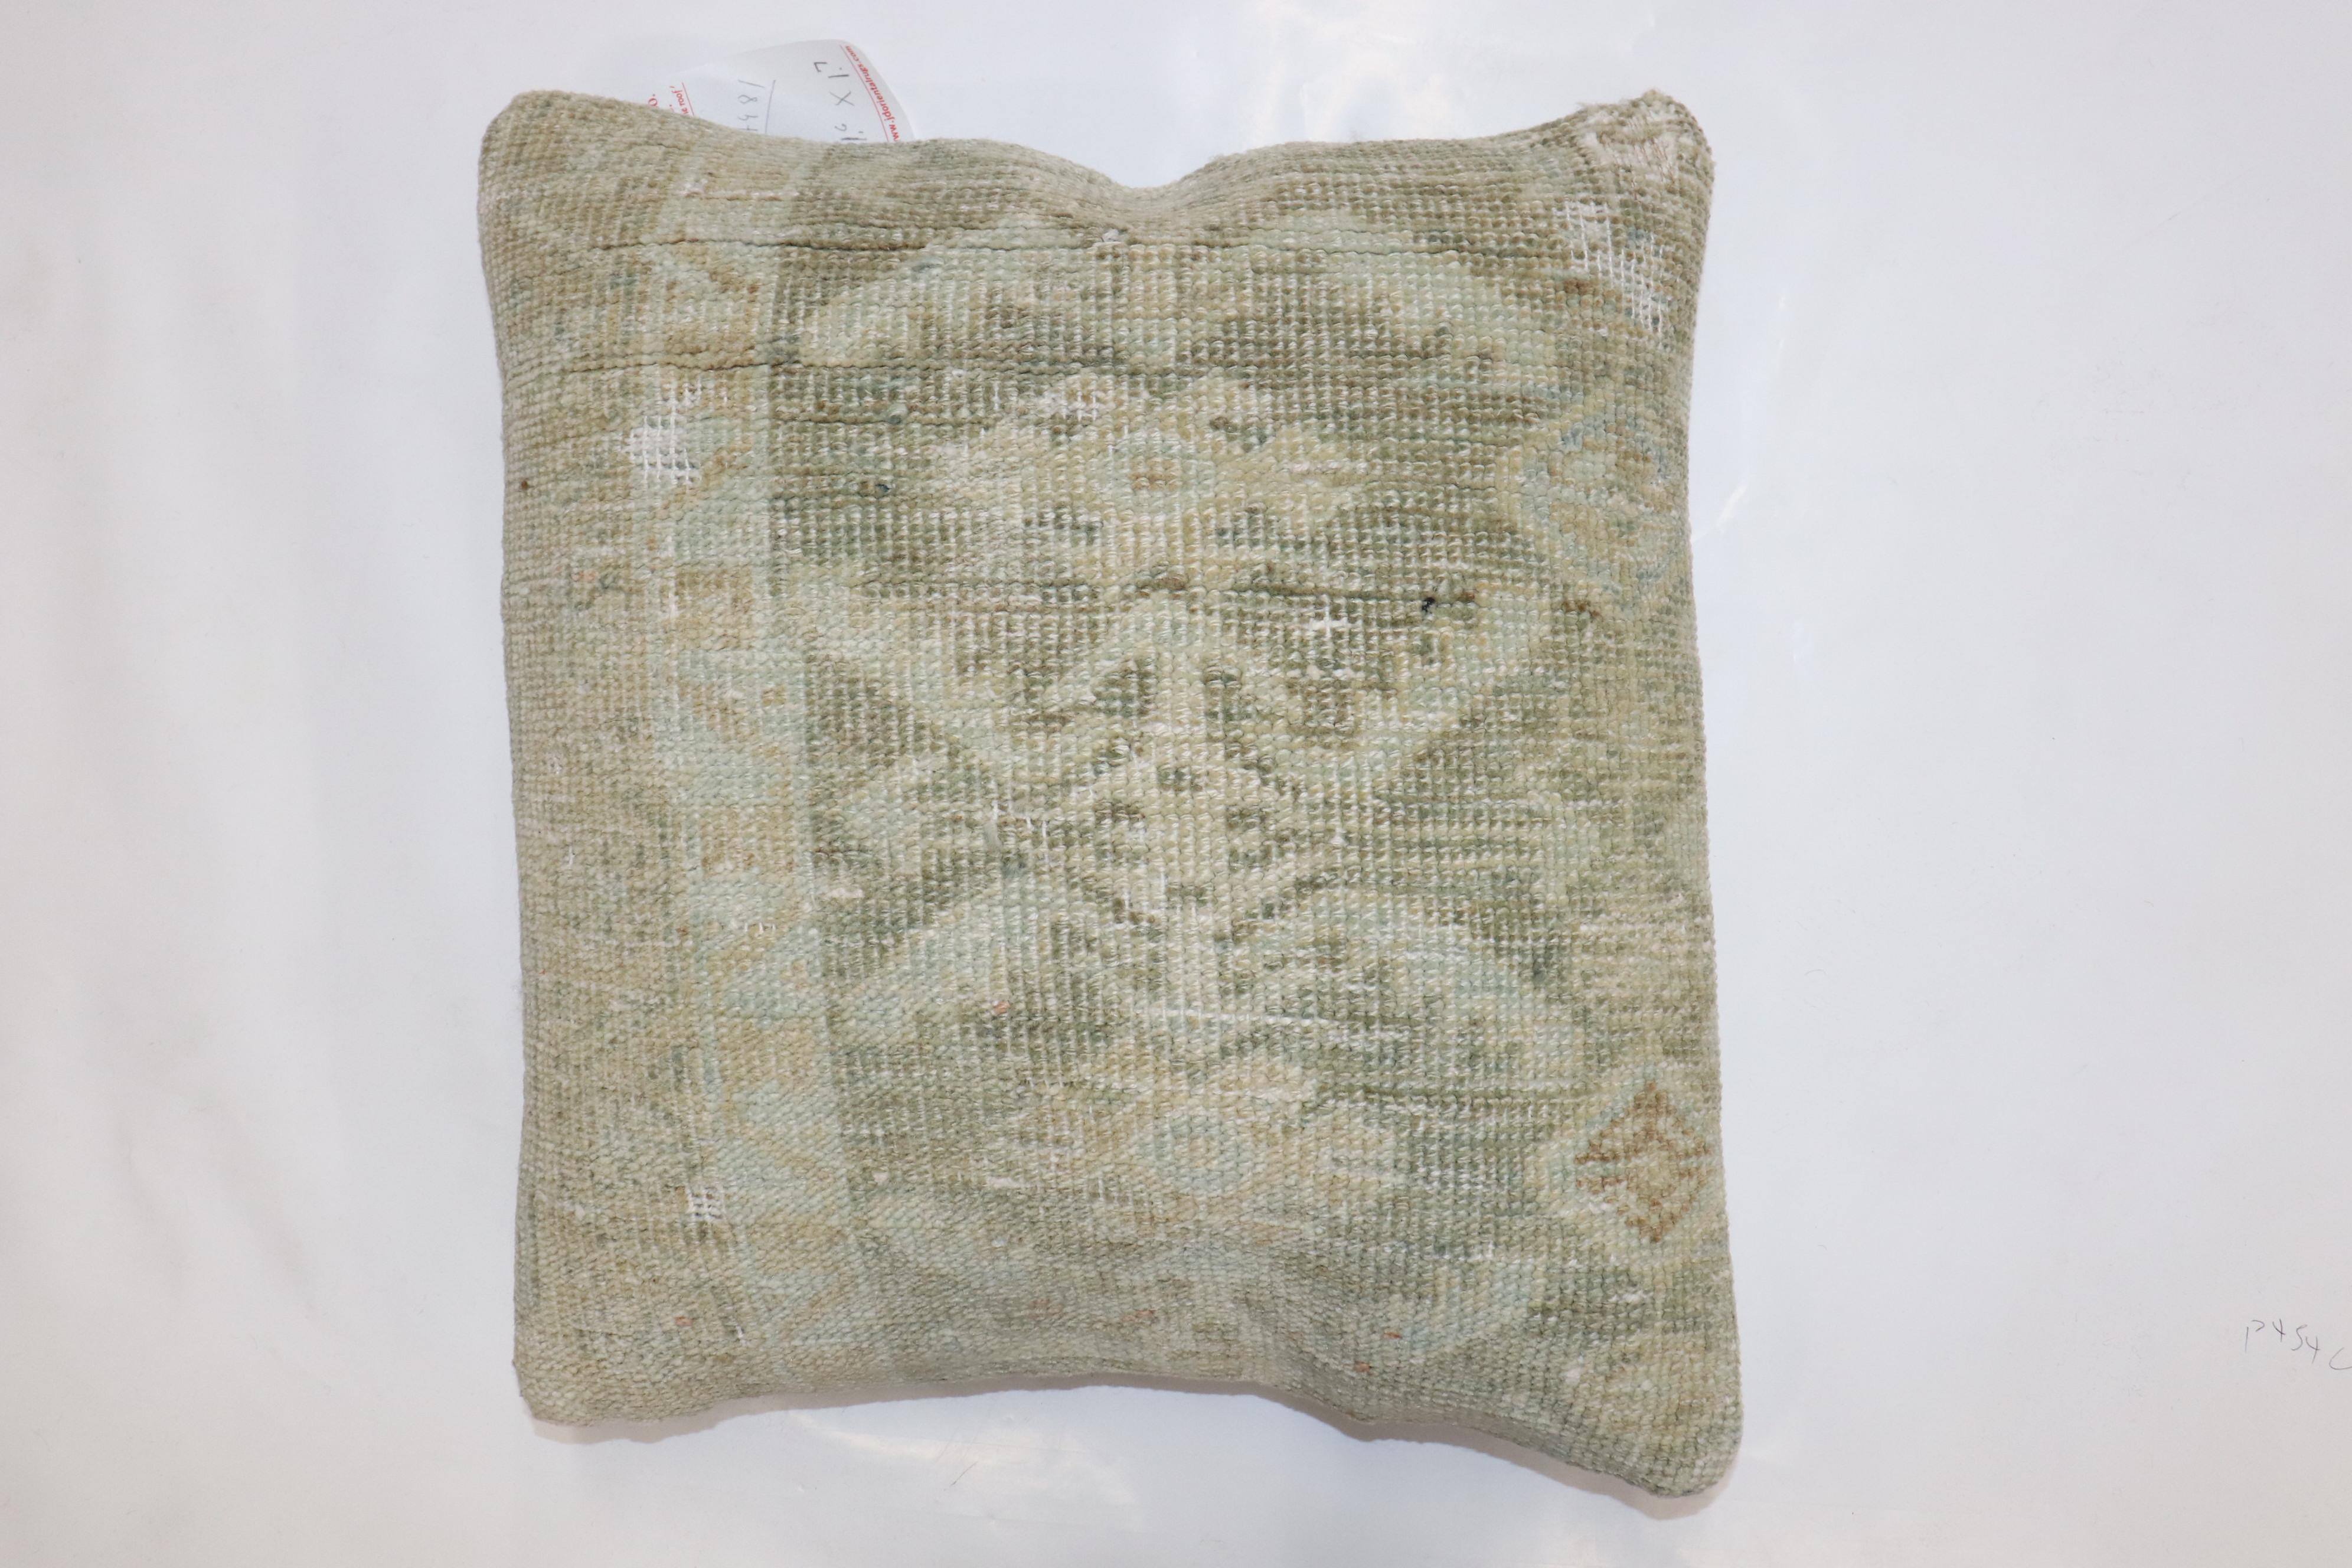 Oreiller fabriqué à partir d'un ancien tapis persan Malayer vert pâle

Mesures : 18'' x 19''.